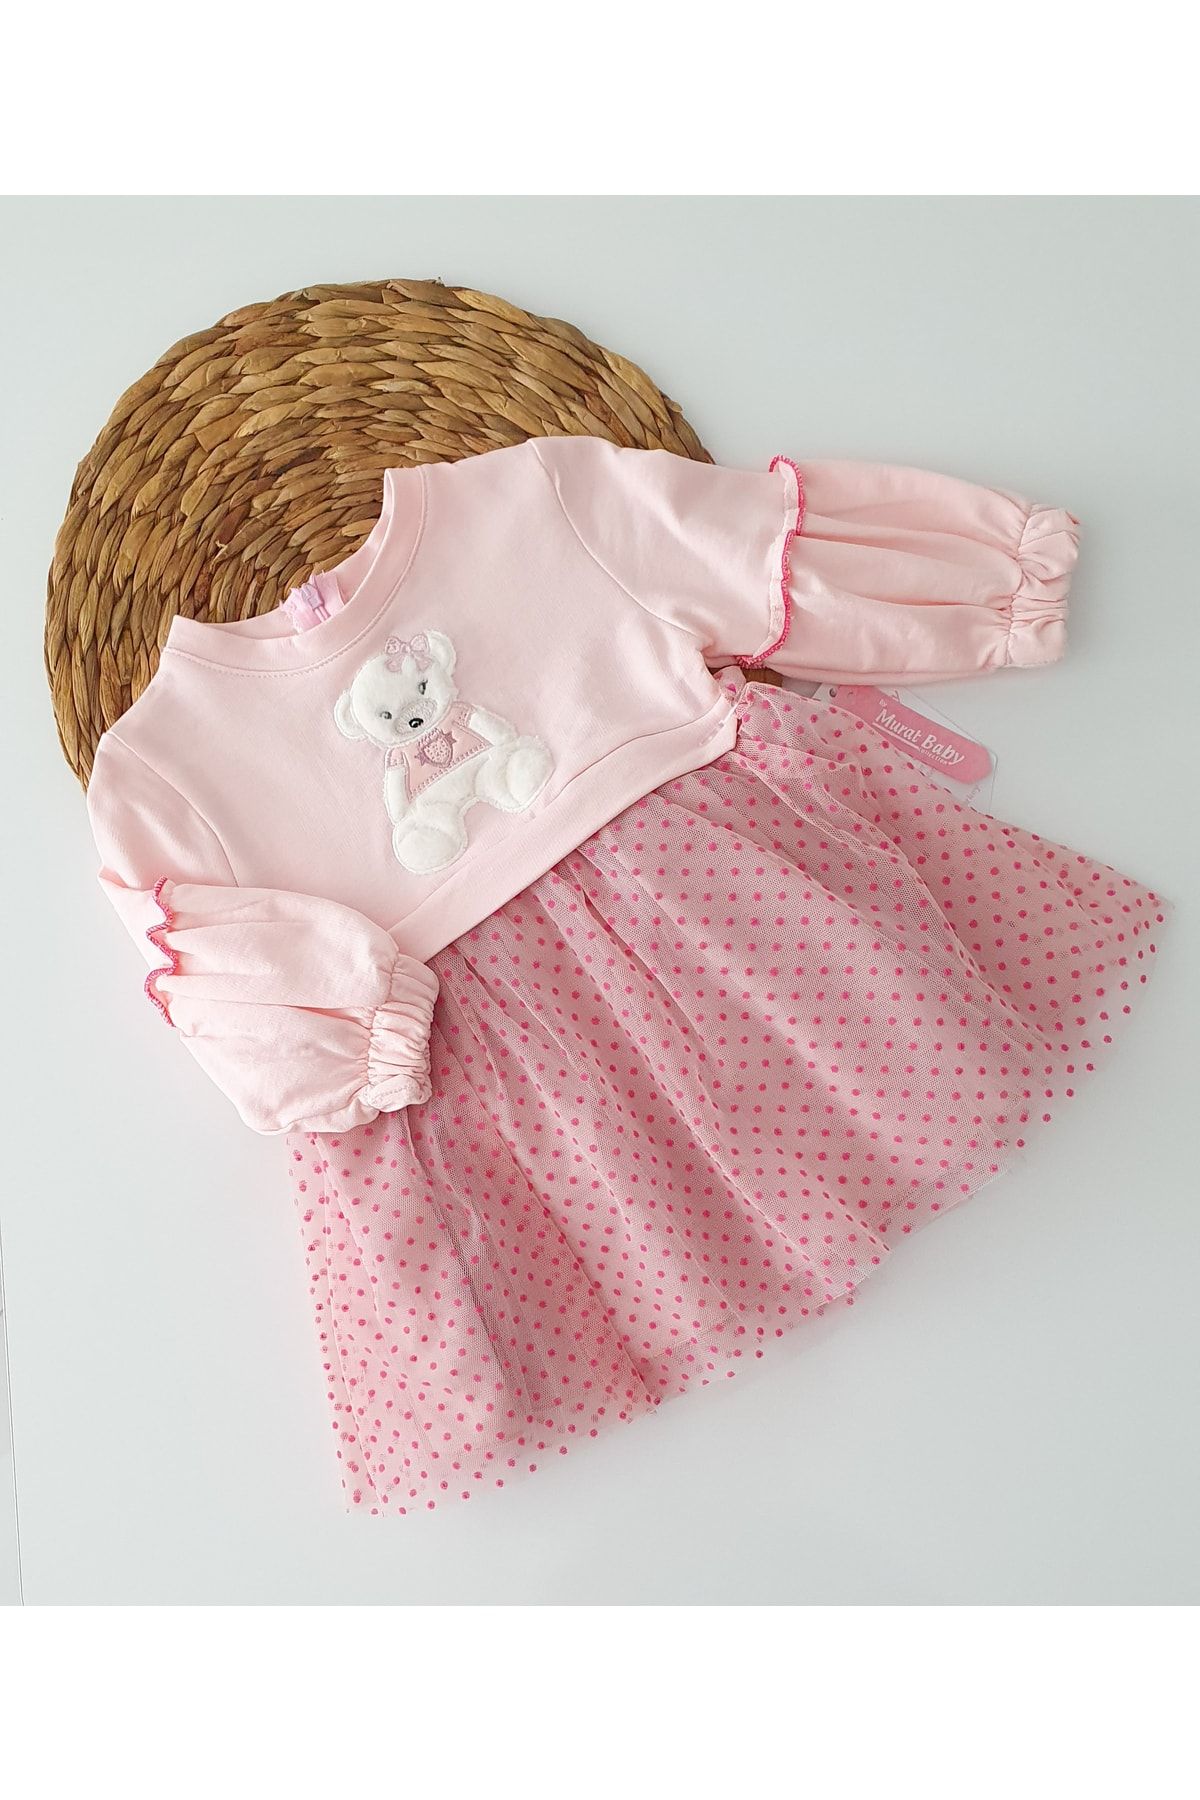 Murat Baby Ayıcıklı Puanlı Tüllü Çocuk Elbisesi